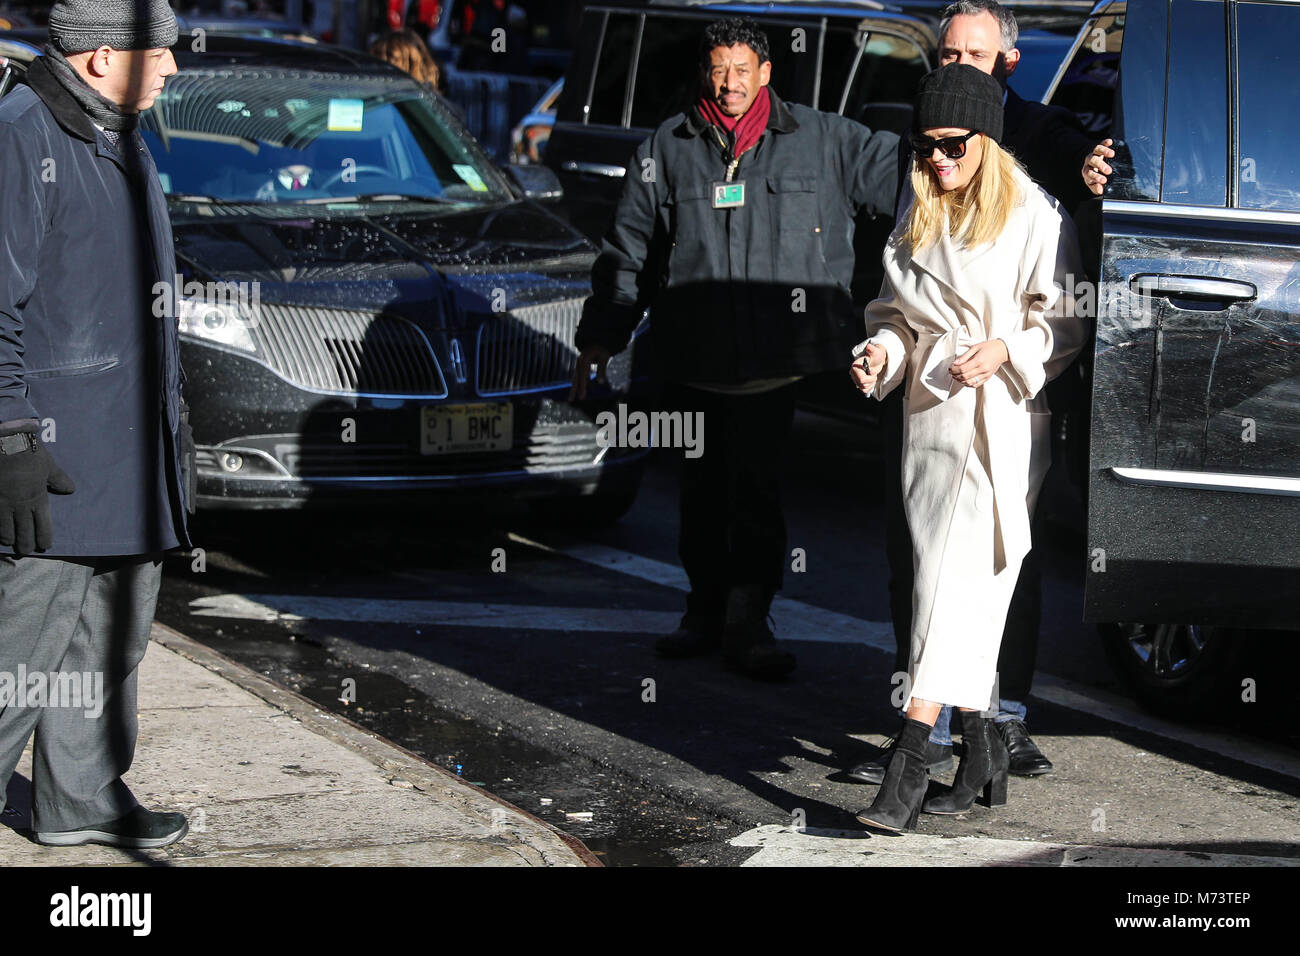 New York, Stati Uniti d'America. 8 Marzo, 2018. L'attrice americana Reese Witherspoon è visto arrivare in un programma televisivo in Manhattan nella città di New York negli Stati Uniti questo giovedì, 08. (Foto: WILLIAM VOLCOV/BRASILE PHOTO PRESS) Credito: Brasile Photo Press/Alamy Live News Foto Stock